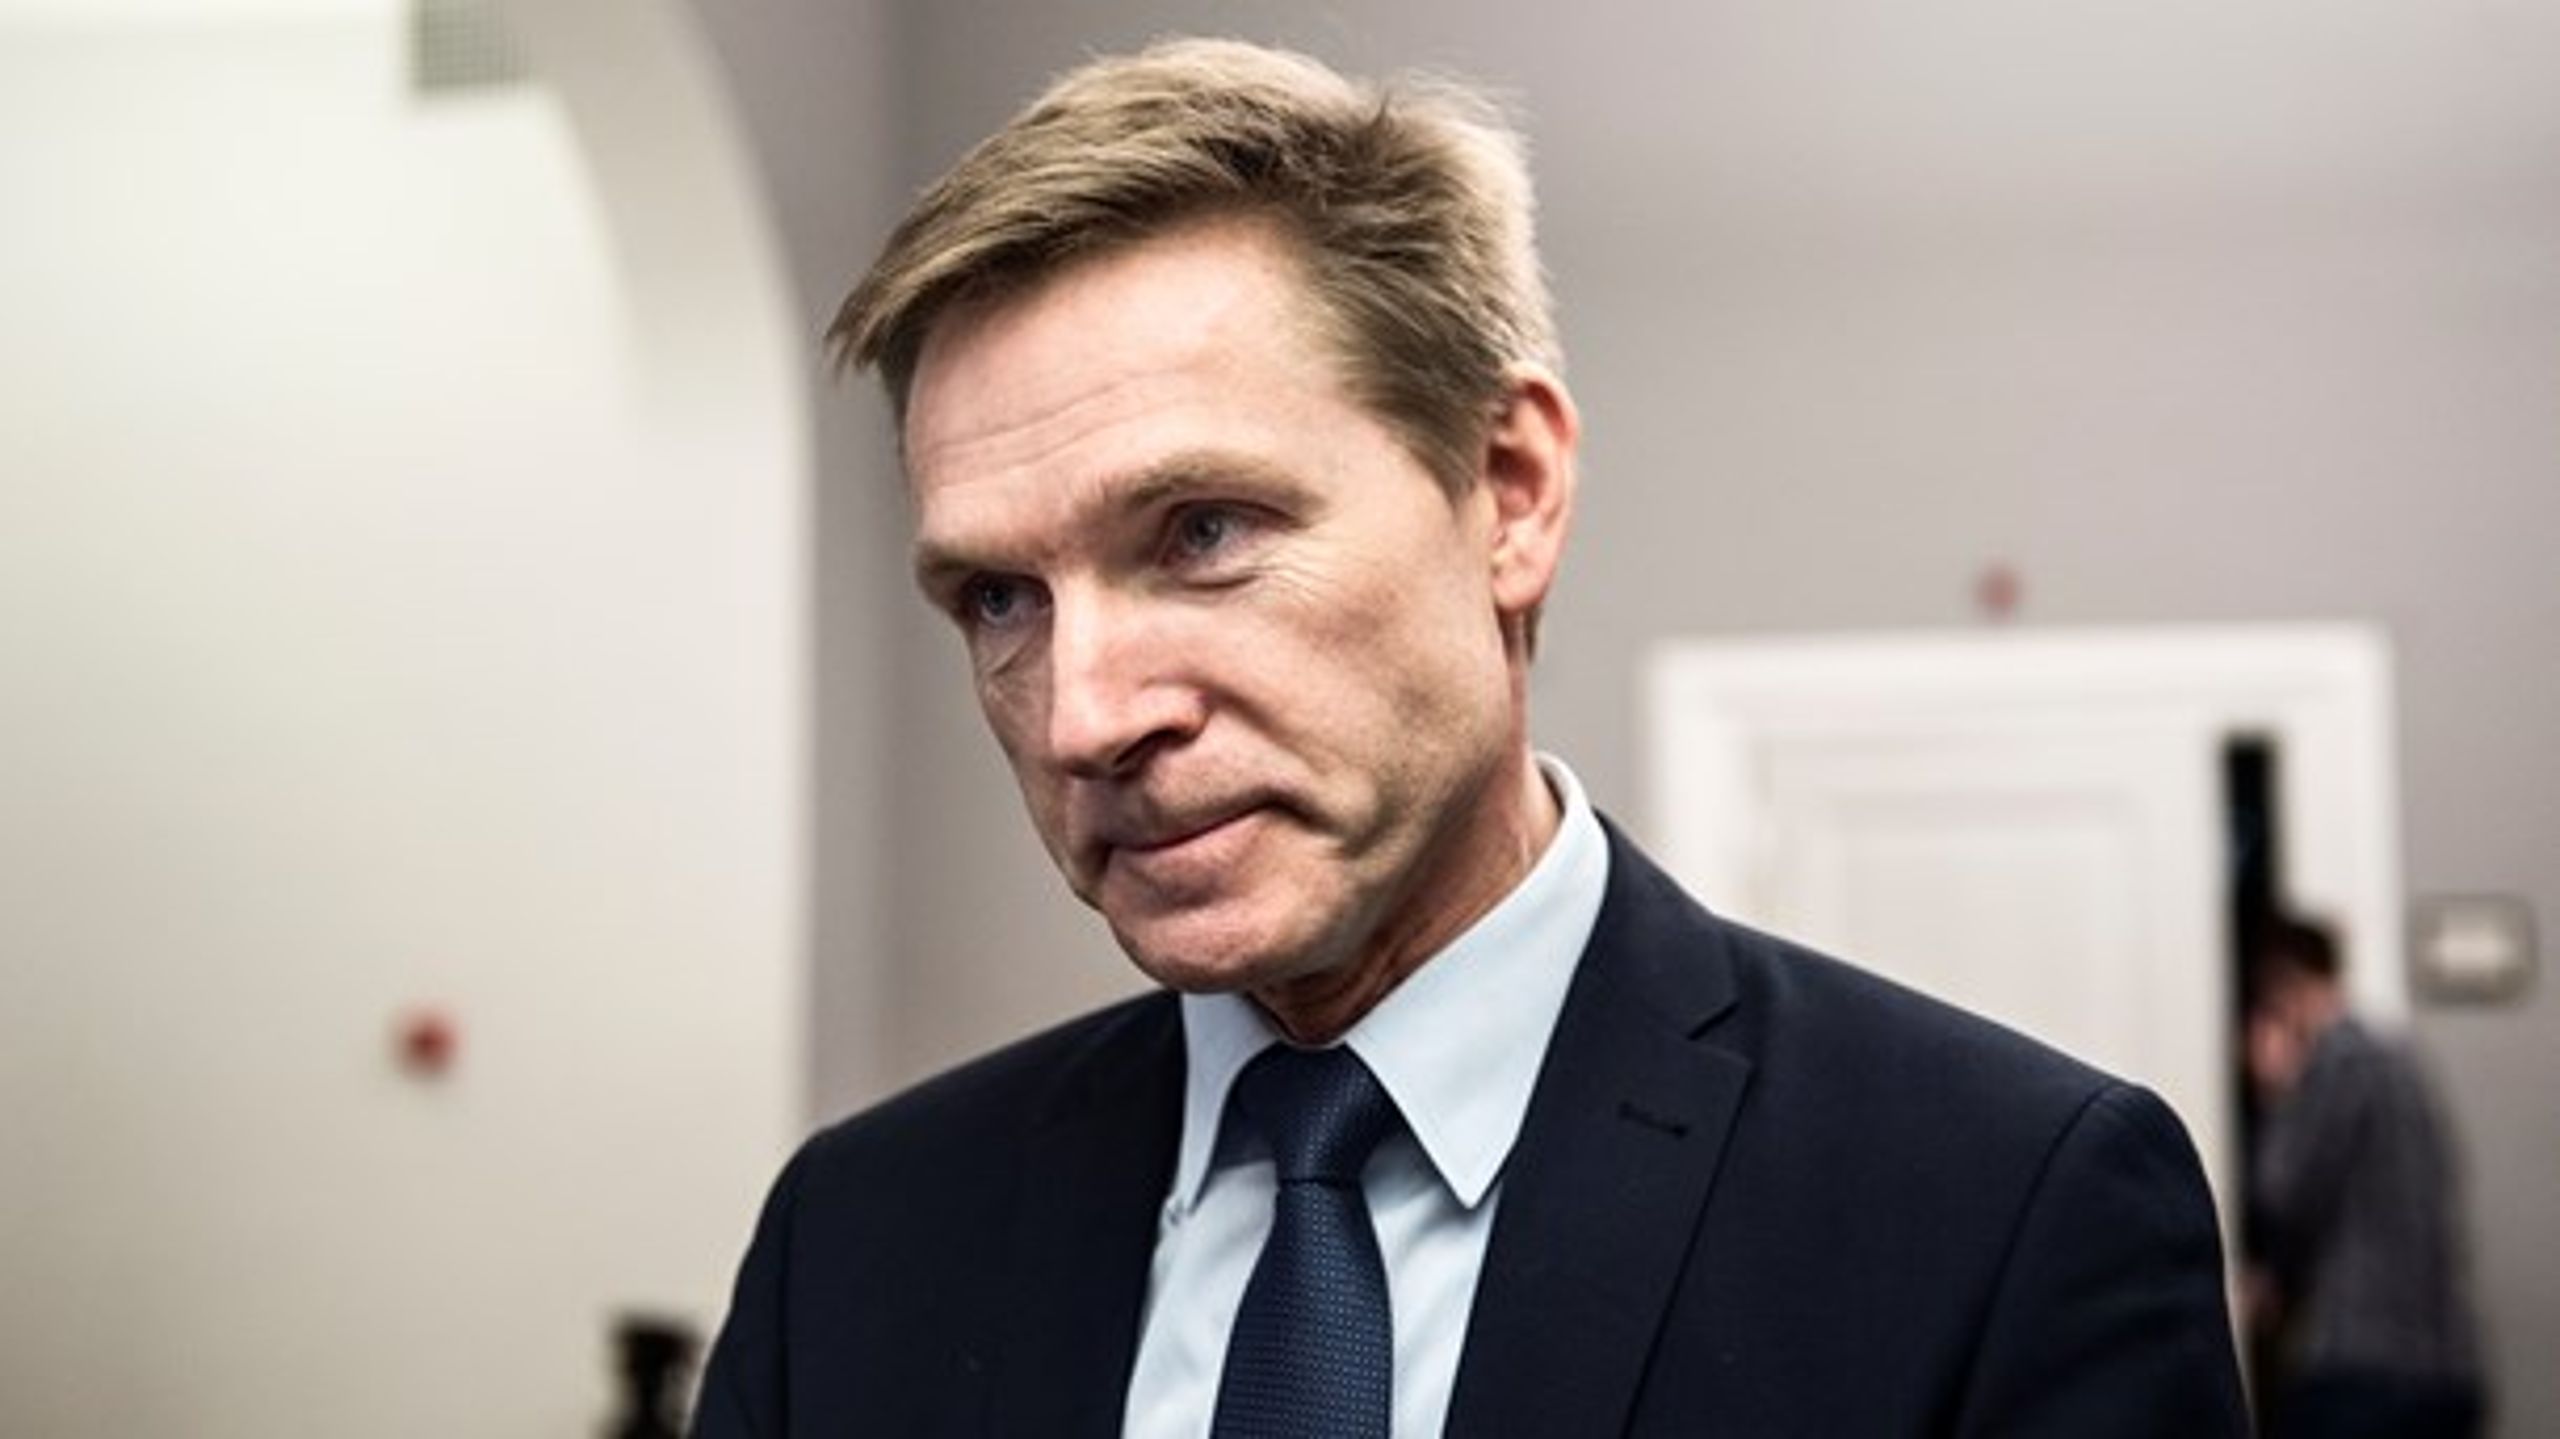 3. marts slog Dansk Folkepartis formand, Kristian Thulesen Dahl, fast,
at partiet kræver det årlige produktivitetskrav til sygehusene fjernet.
SDU-professor tror kun produktivitetskravet bliver justeret.